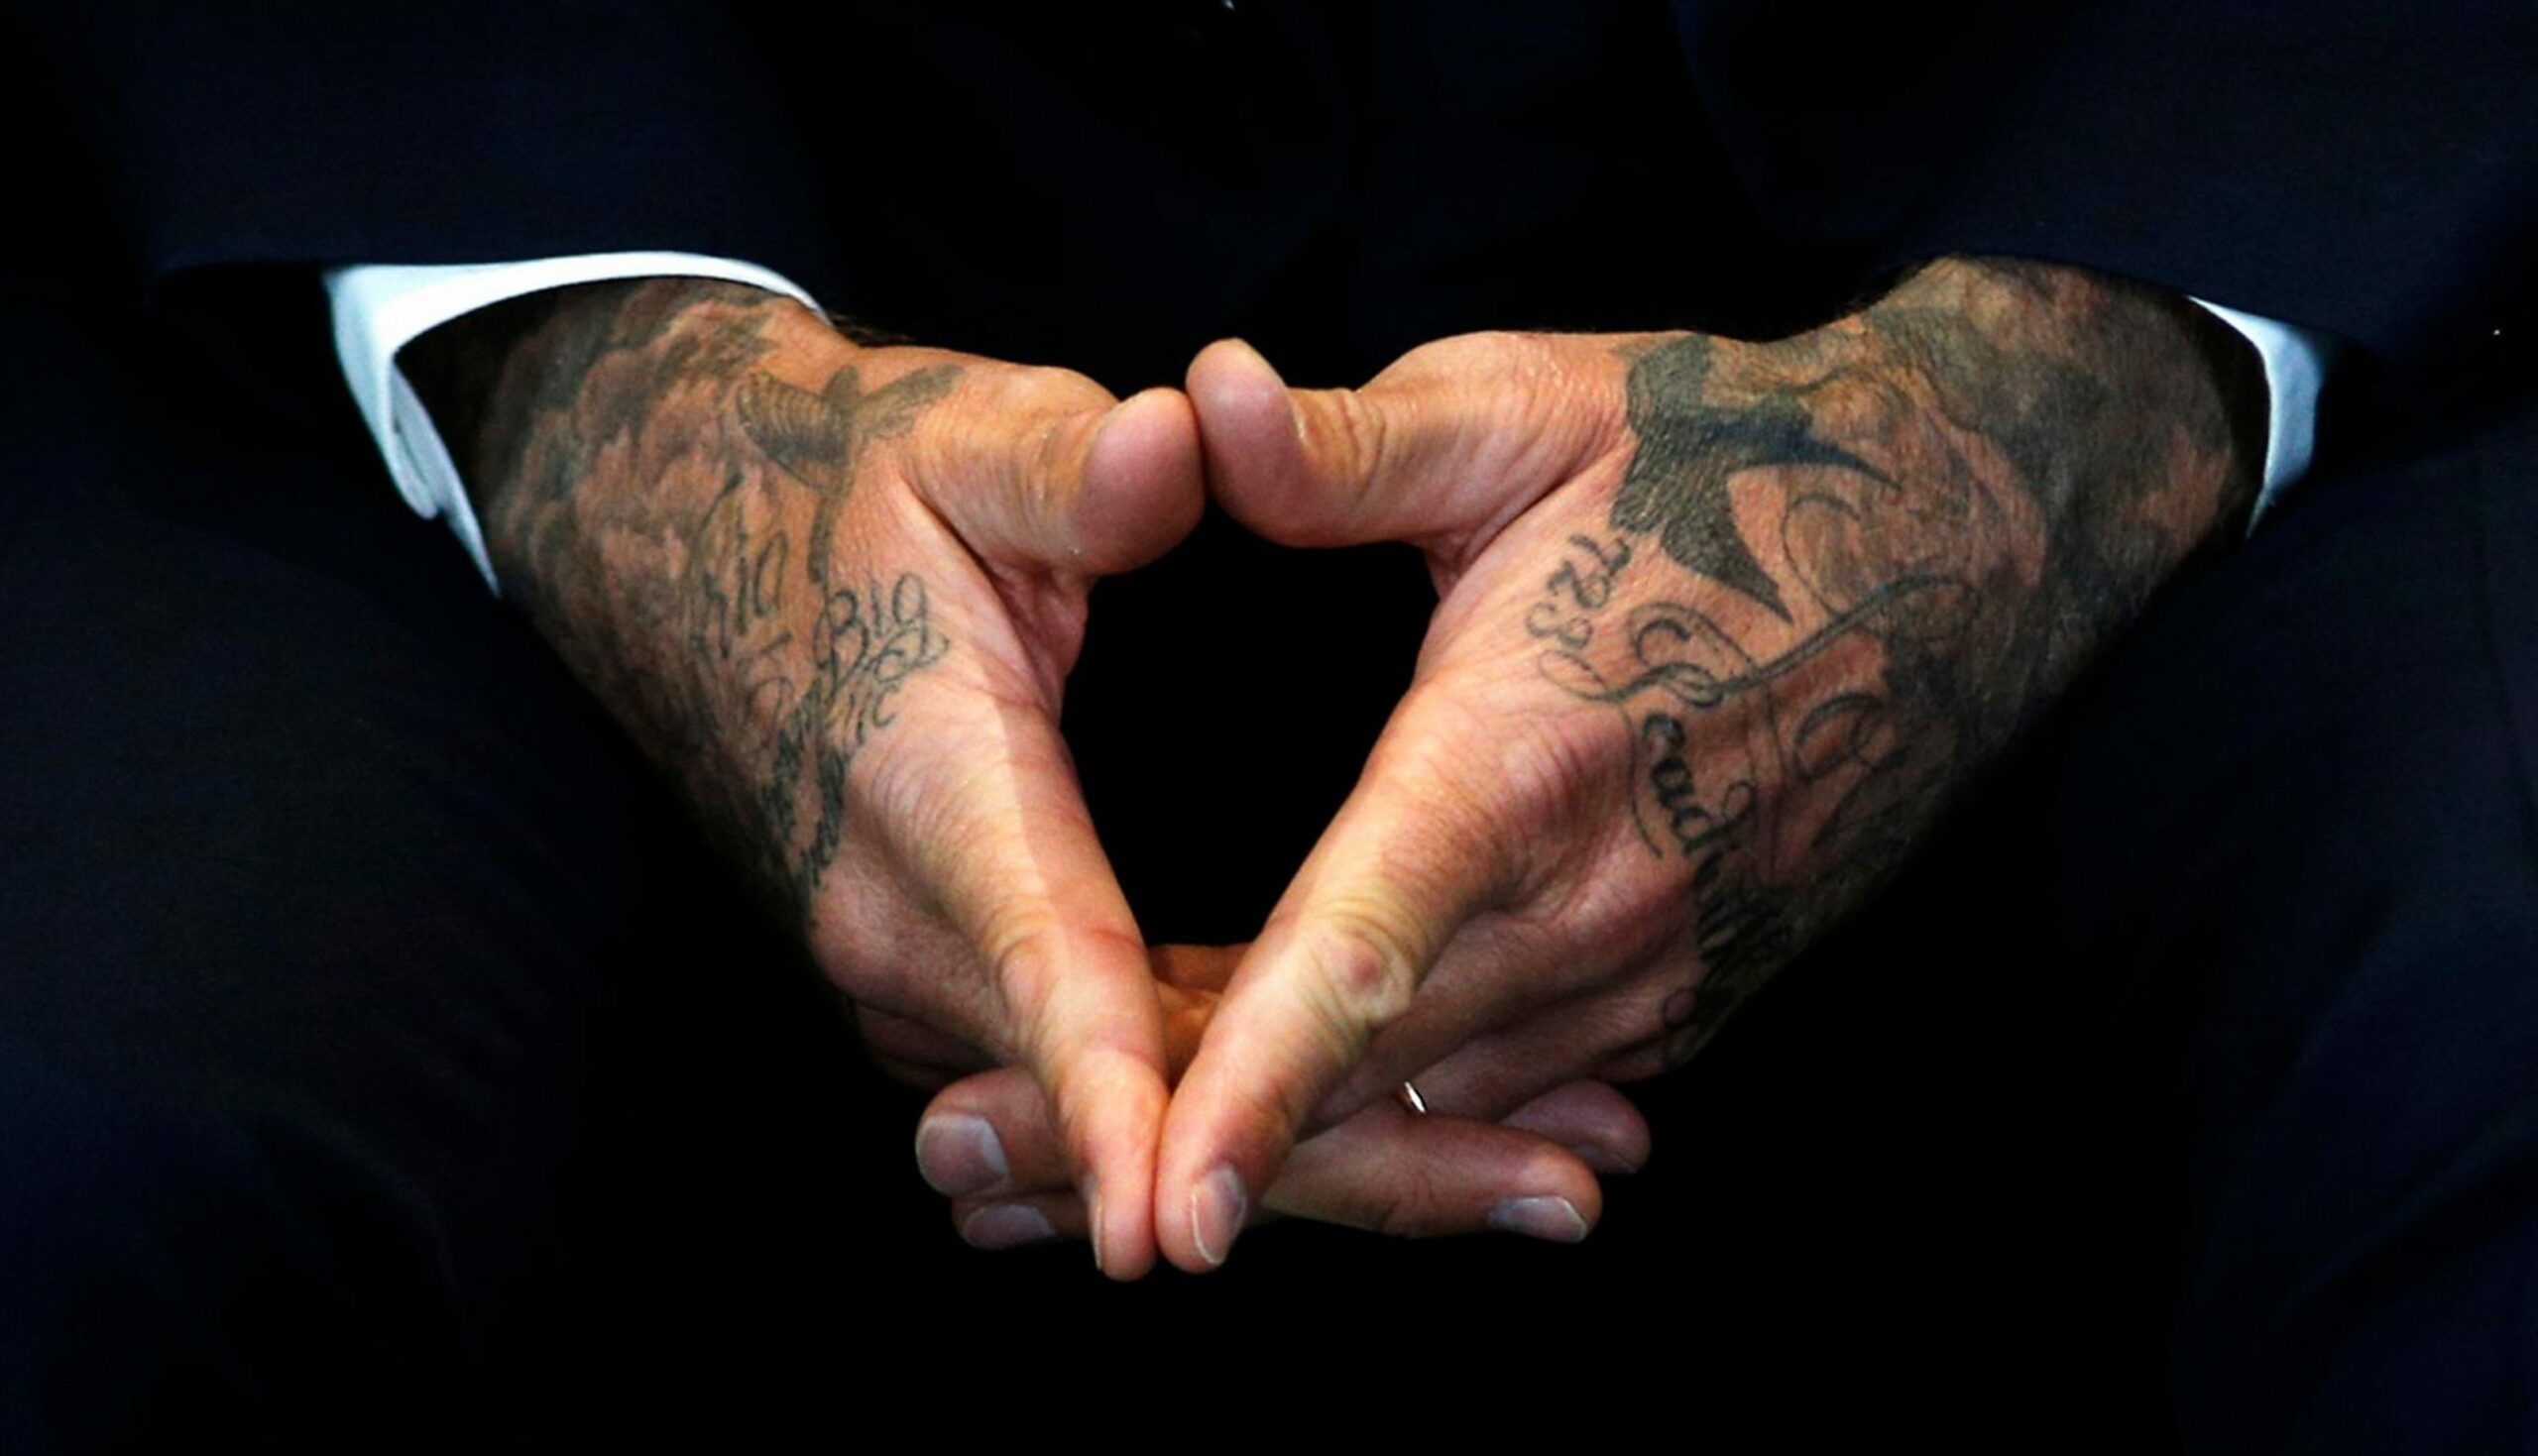 Biggest, baddest tattoo confab? It's here